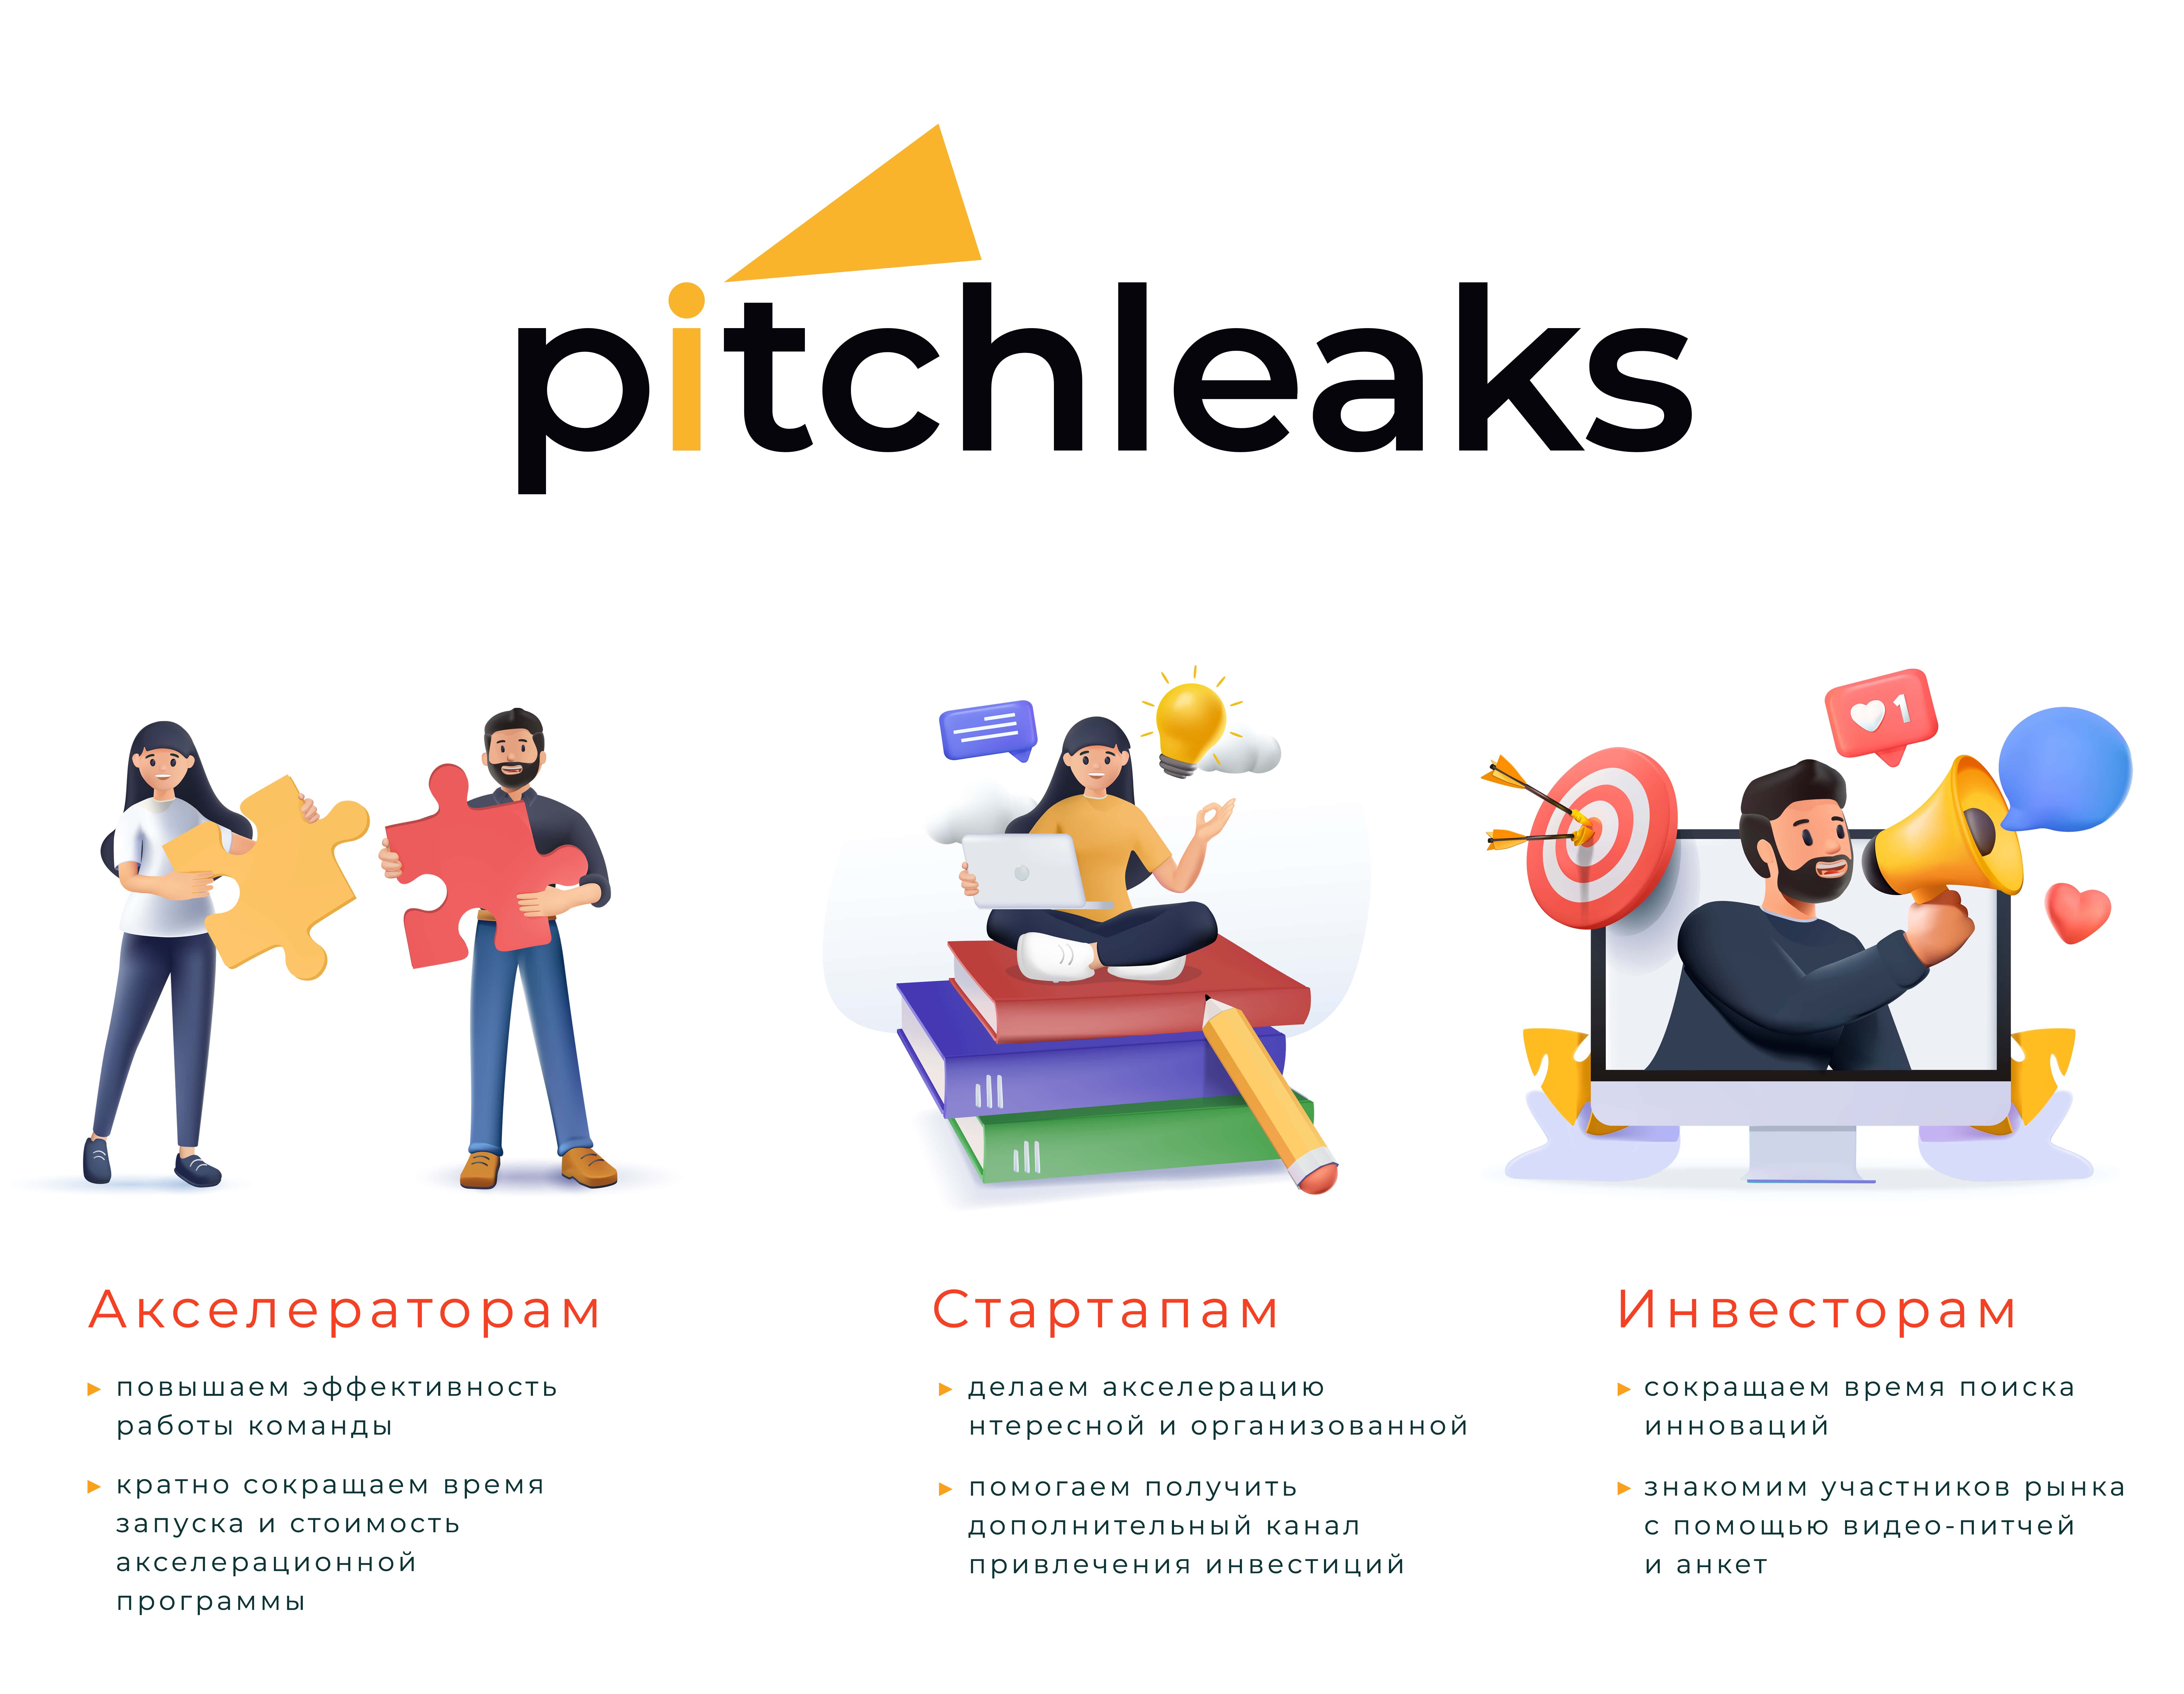 Питчликс — российская CRM для работы со стартапами с опорой на видеоформат коммуникации